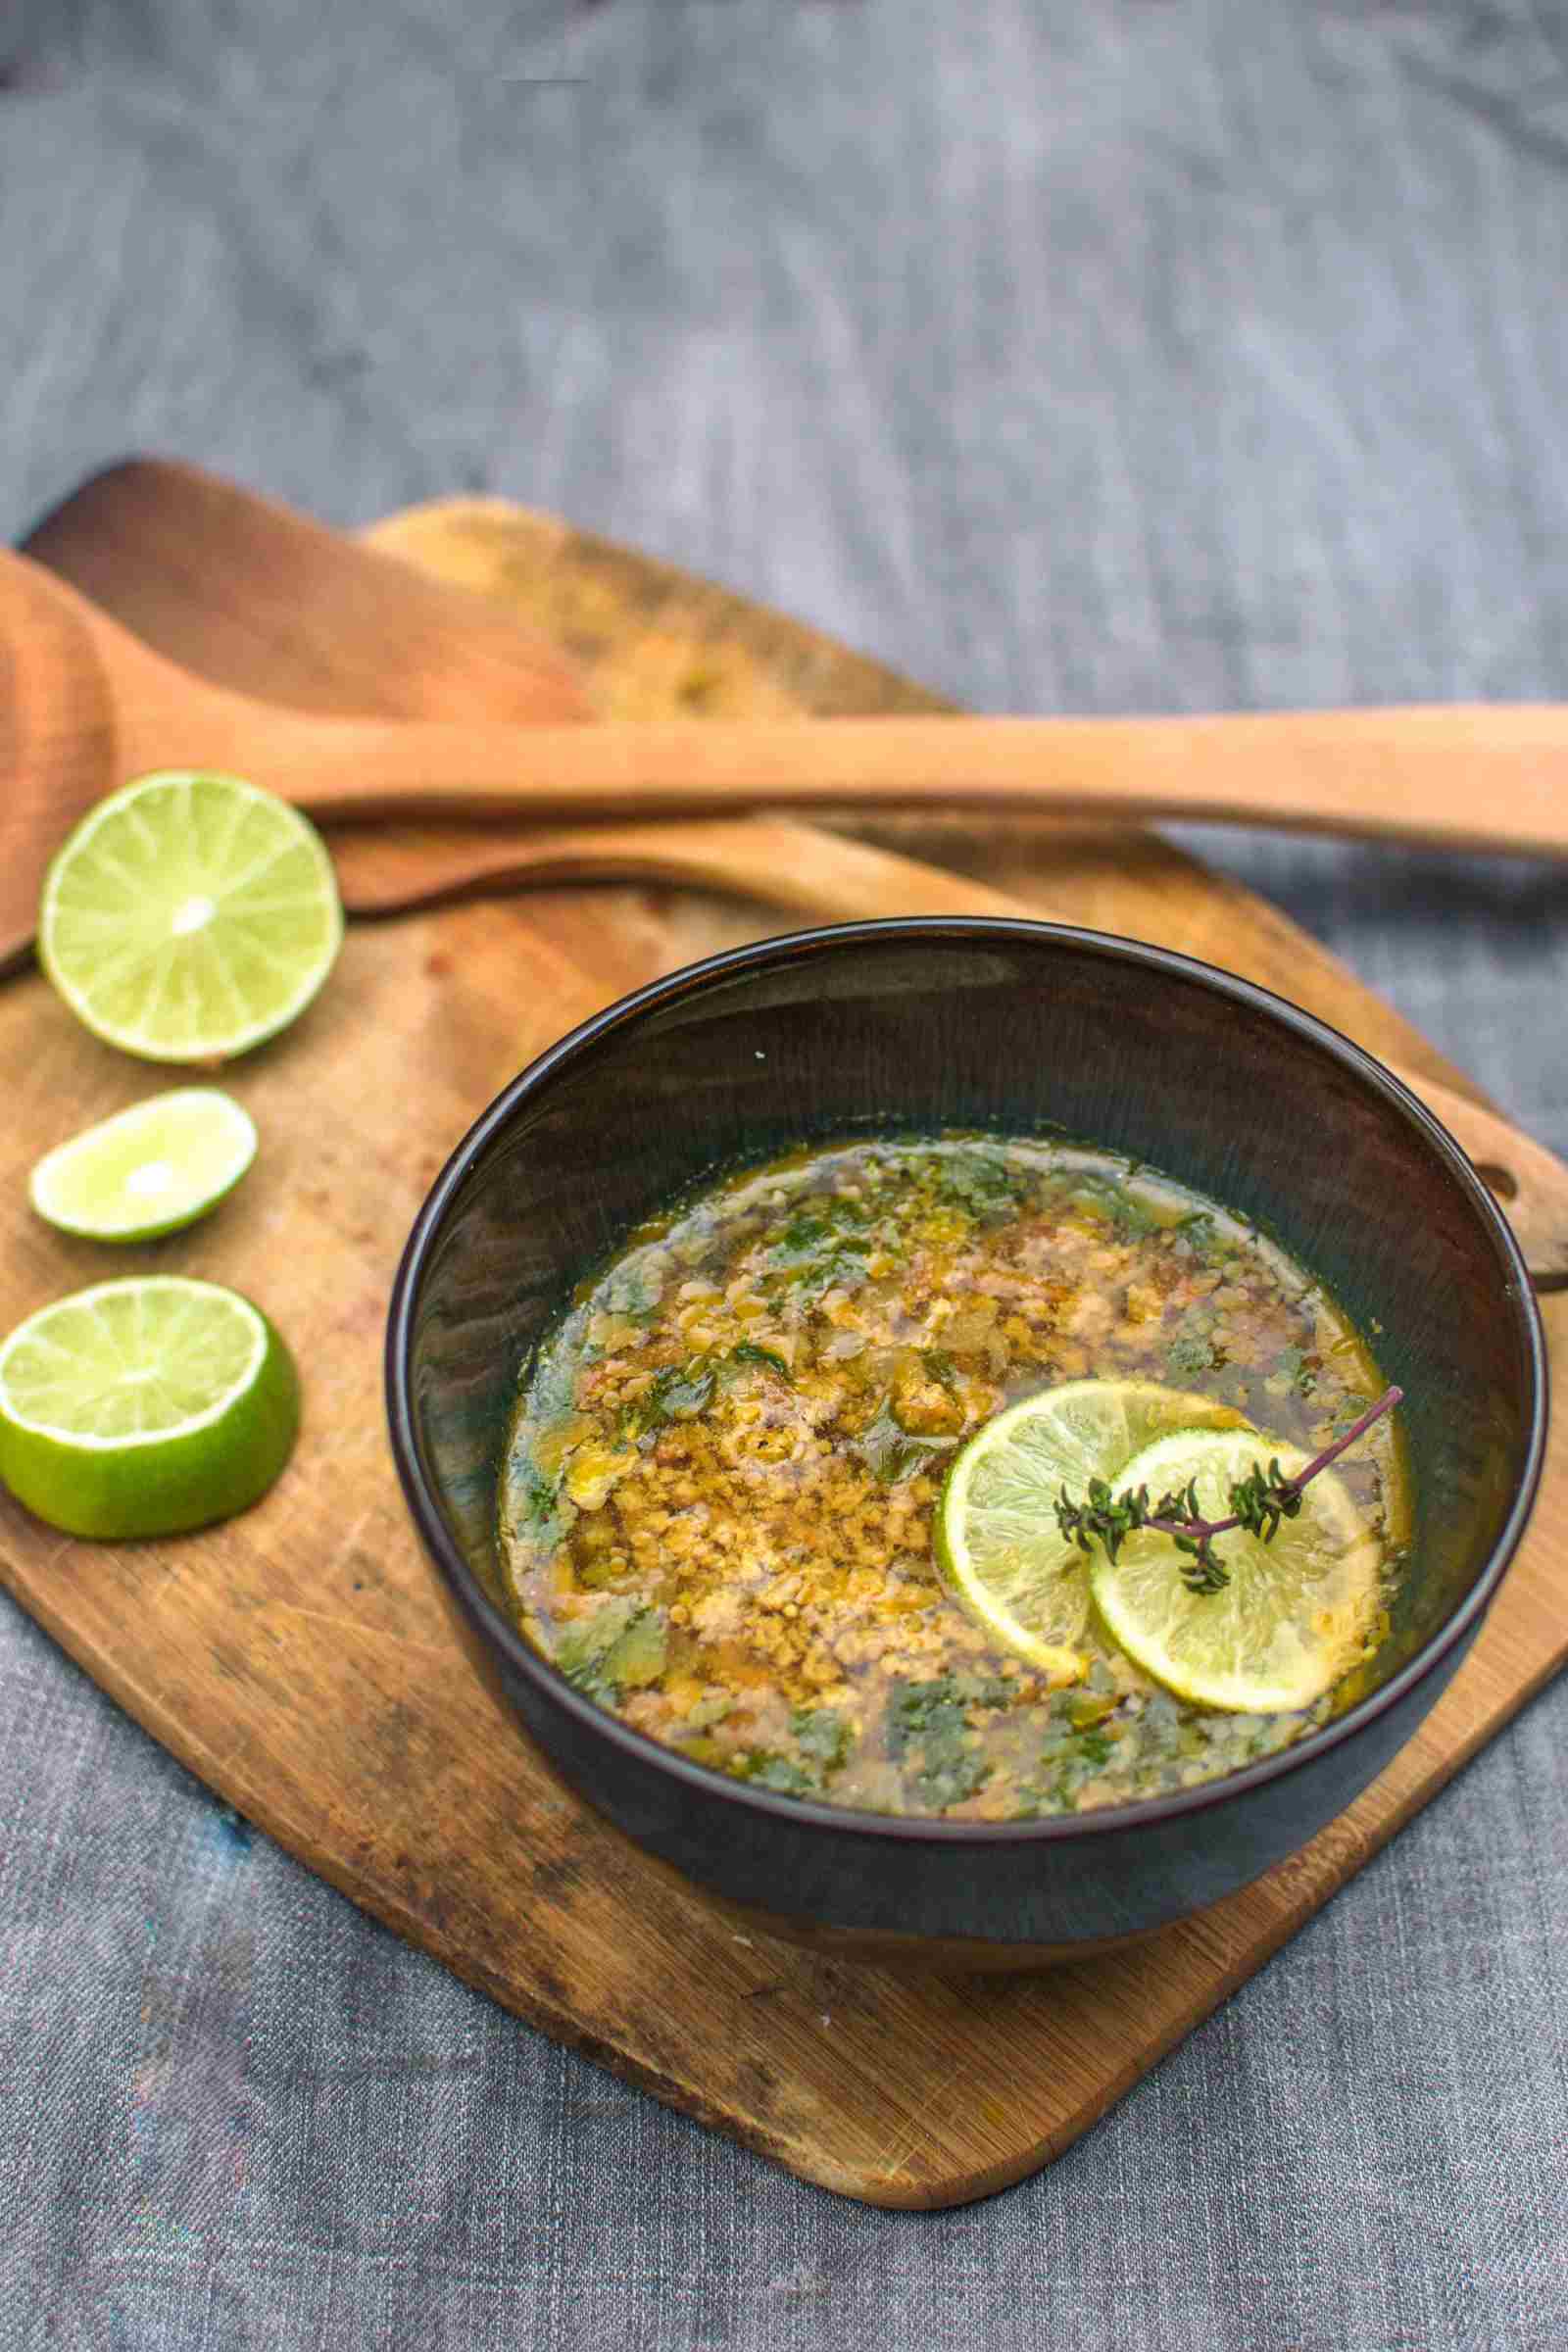 मटन कीमा सूप रेसिपी - Mutton Keema Soup Recipe